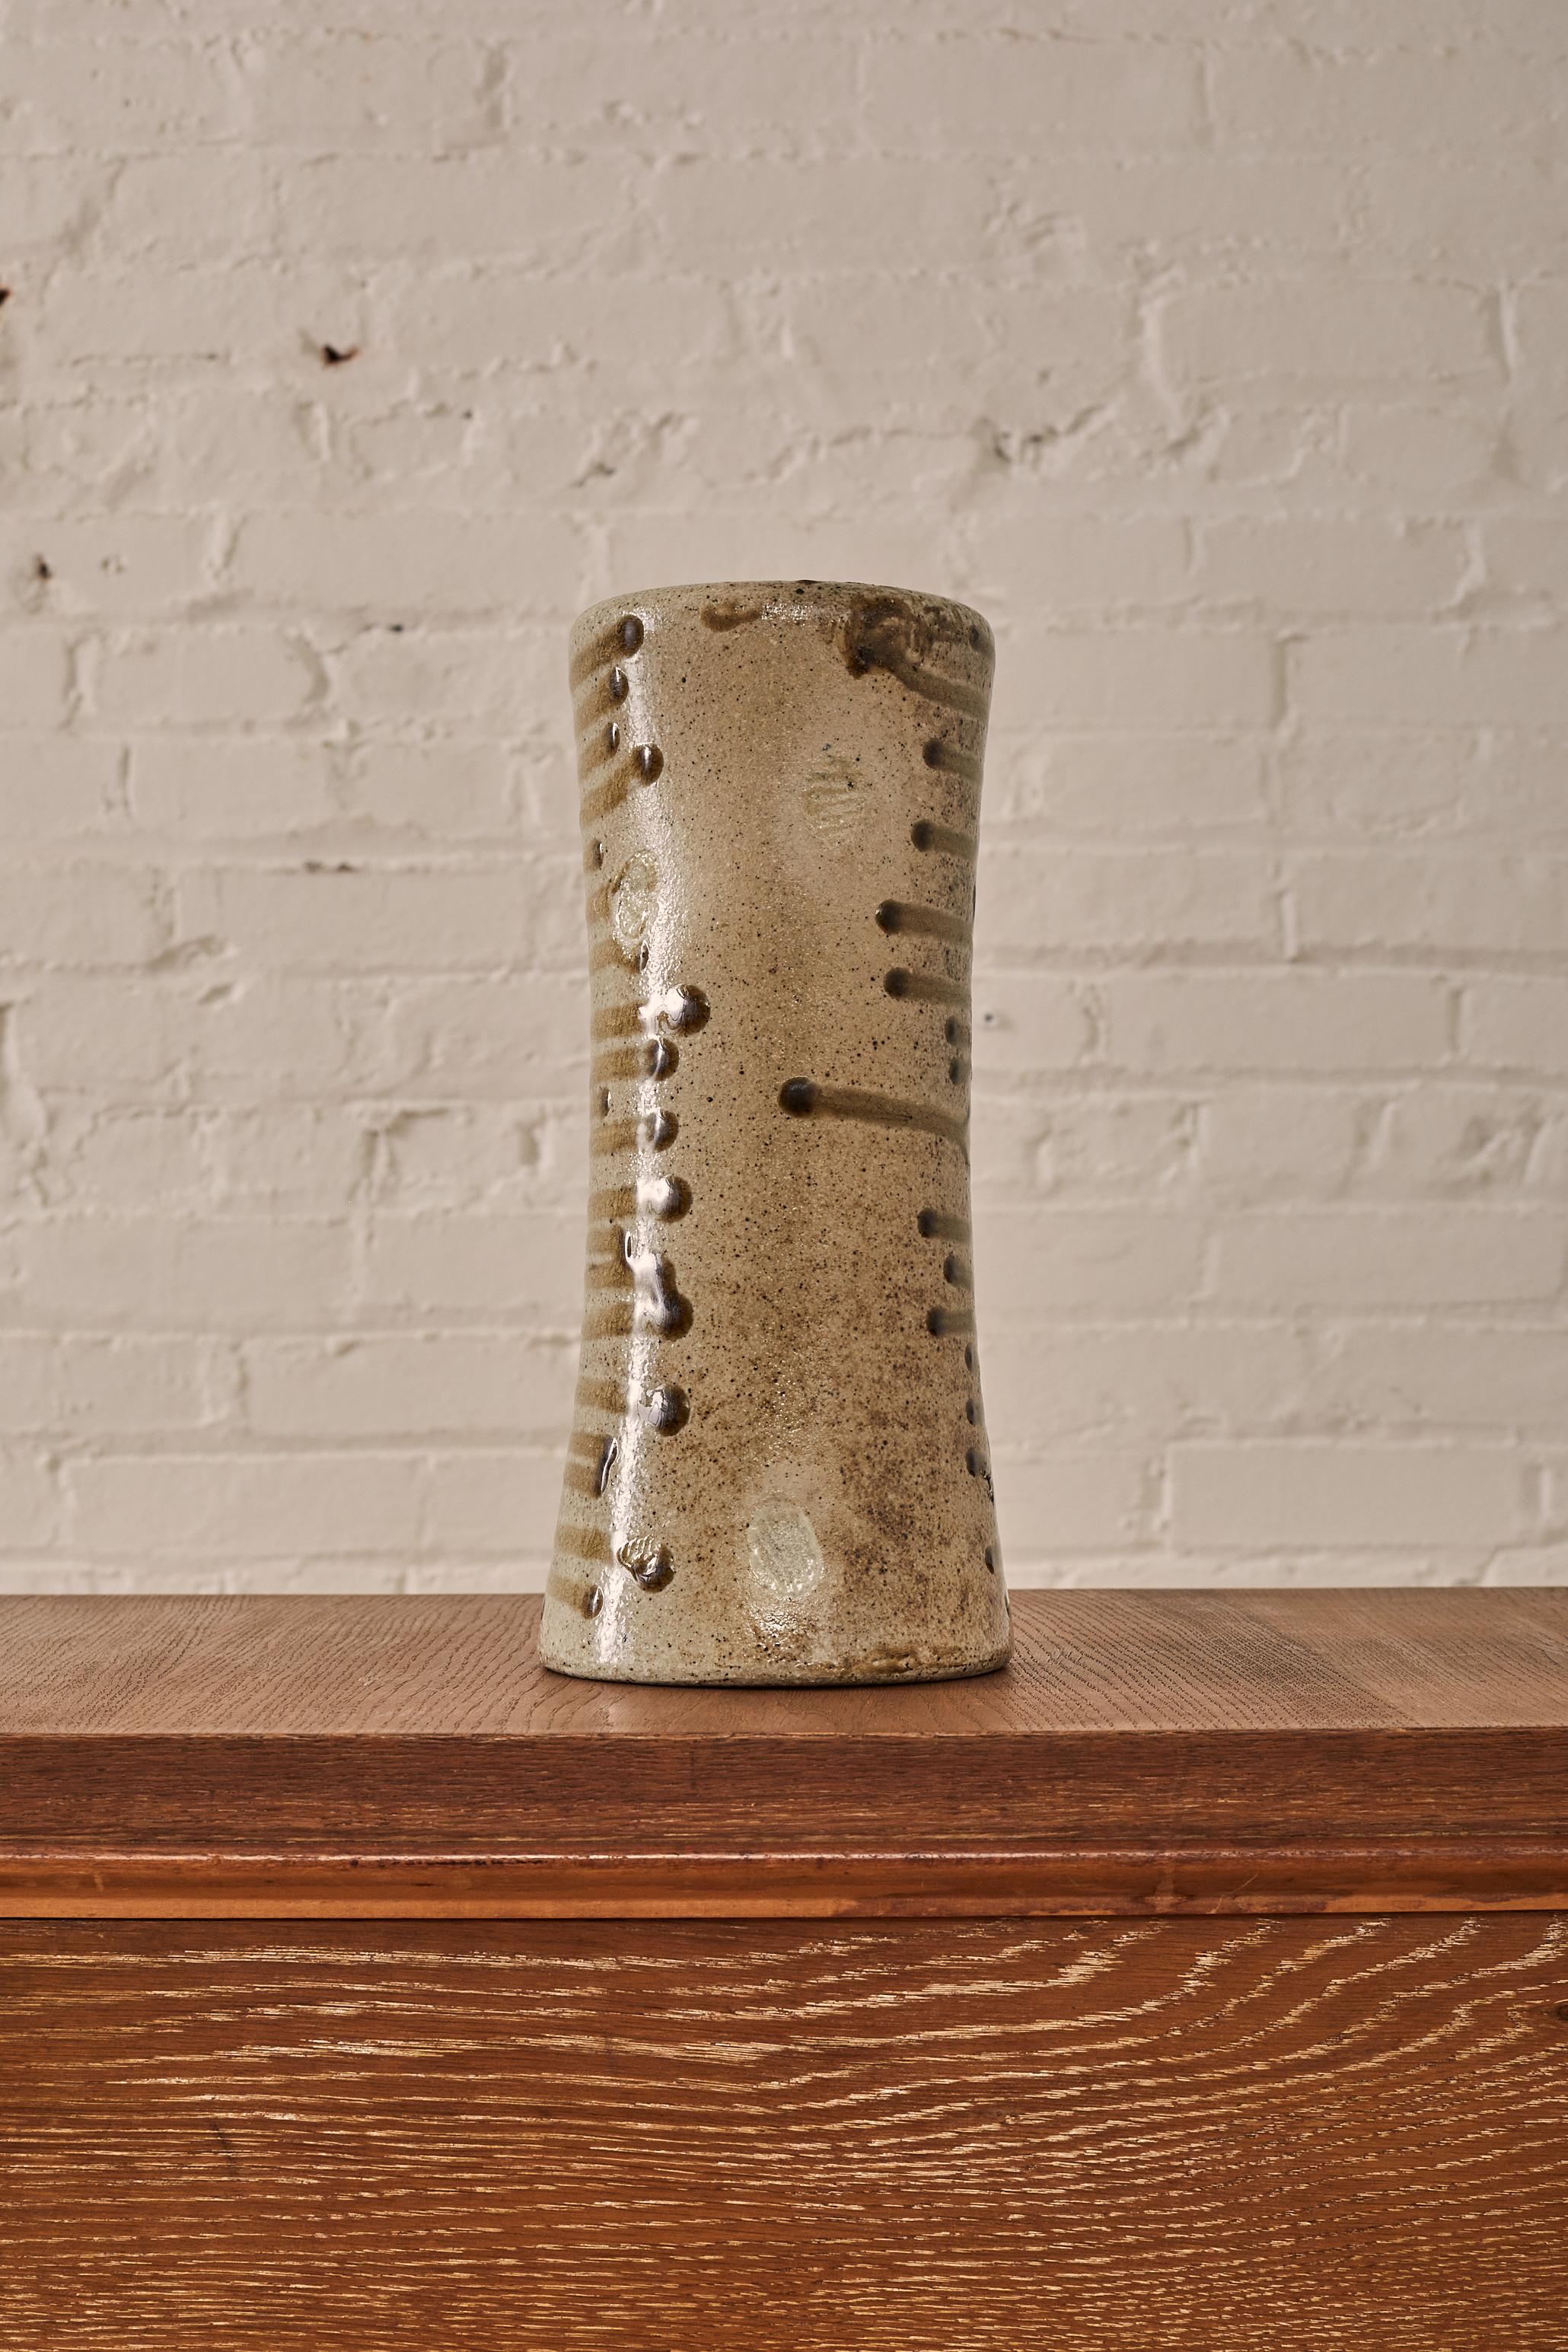 Vase aus glasierter Keramik von David Stuempfle

Technische Details:

Abmessungen: 12.25 